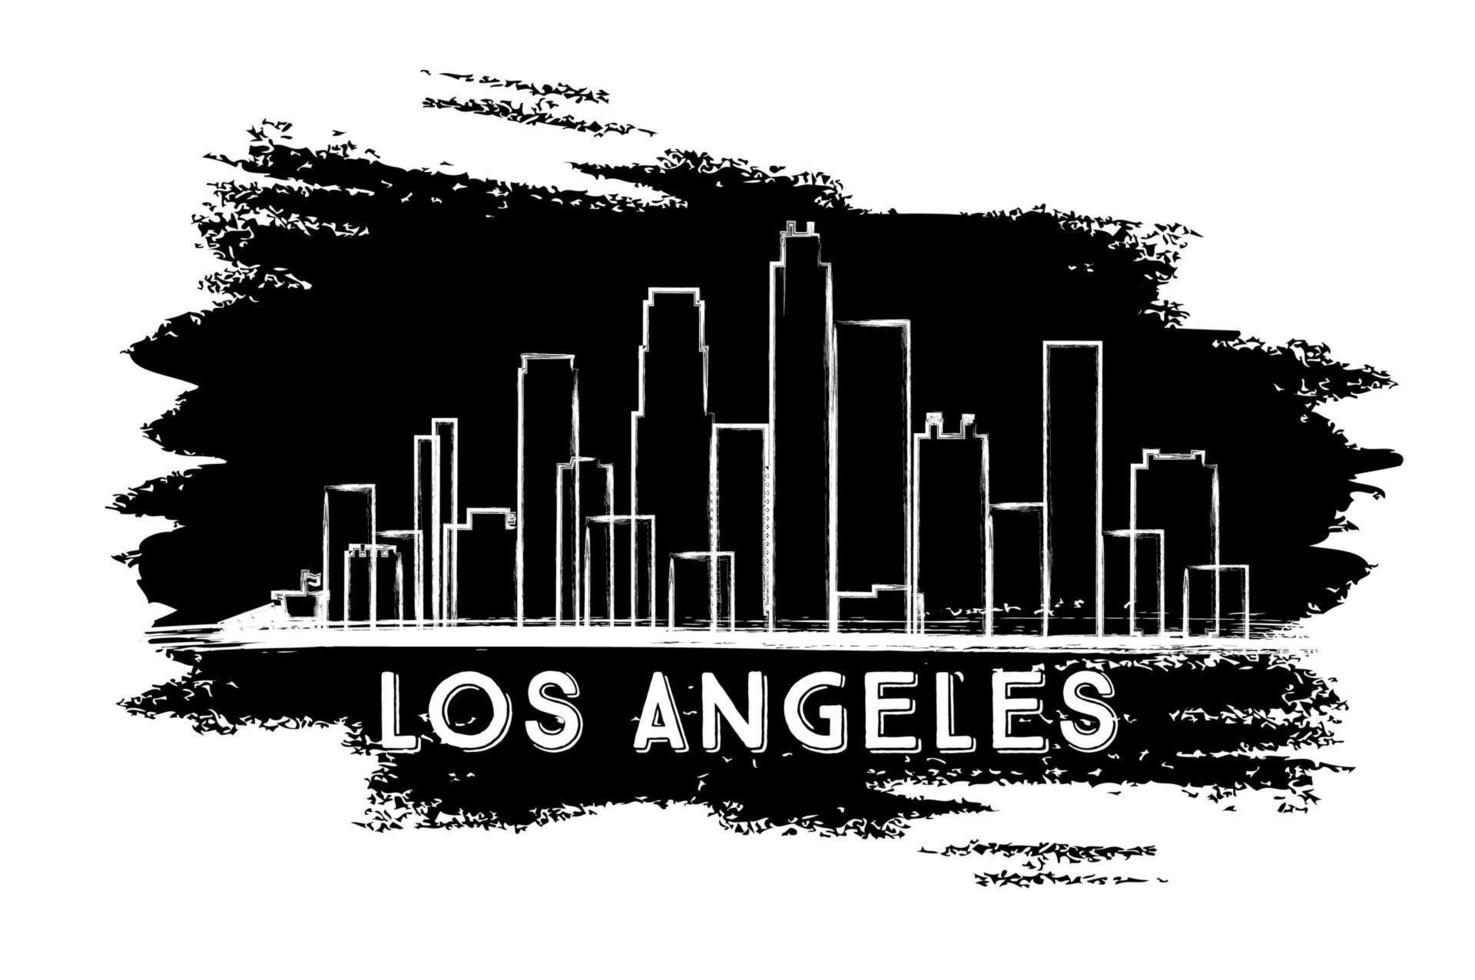 Skyline-Silhouette von Los Angeles. handgezeichnete Skizze. vektor